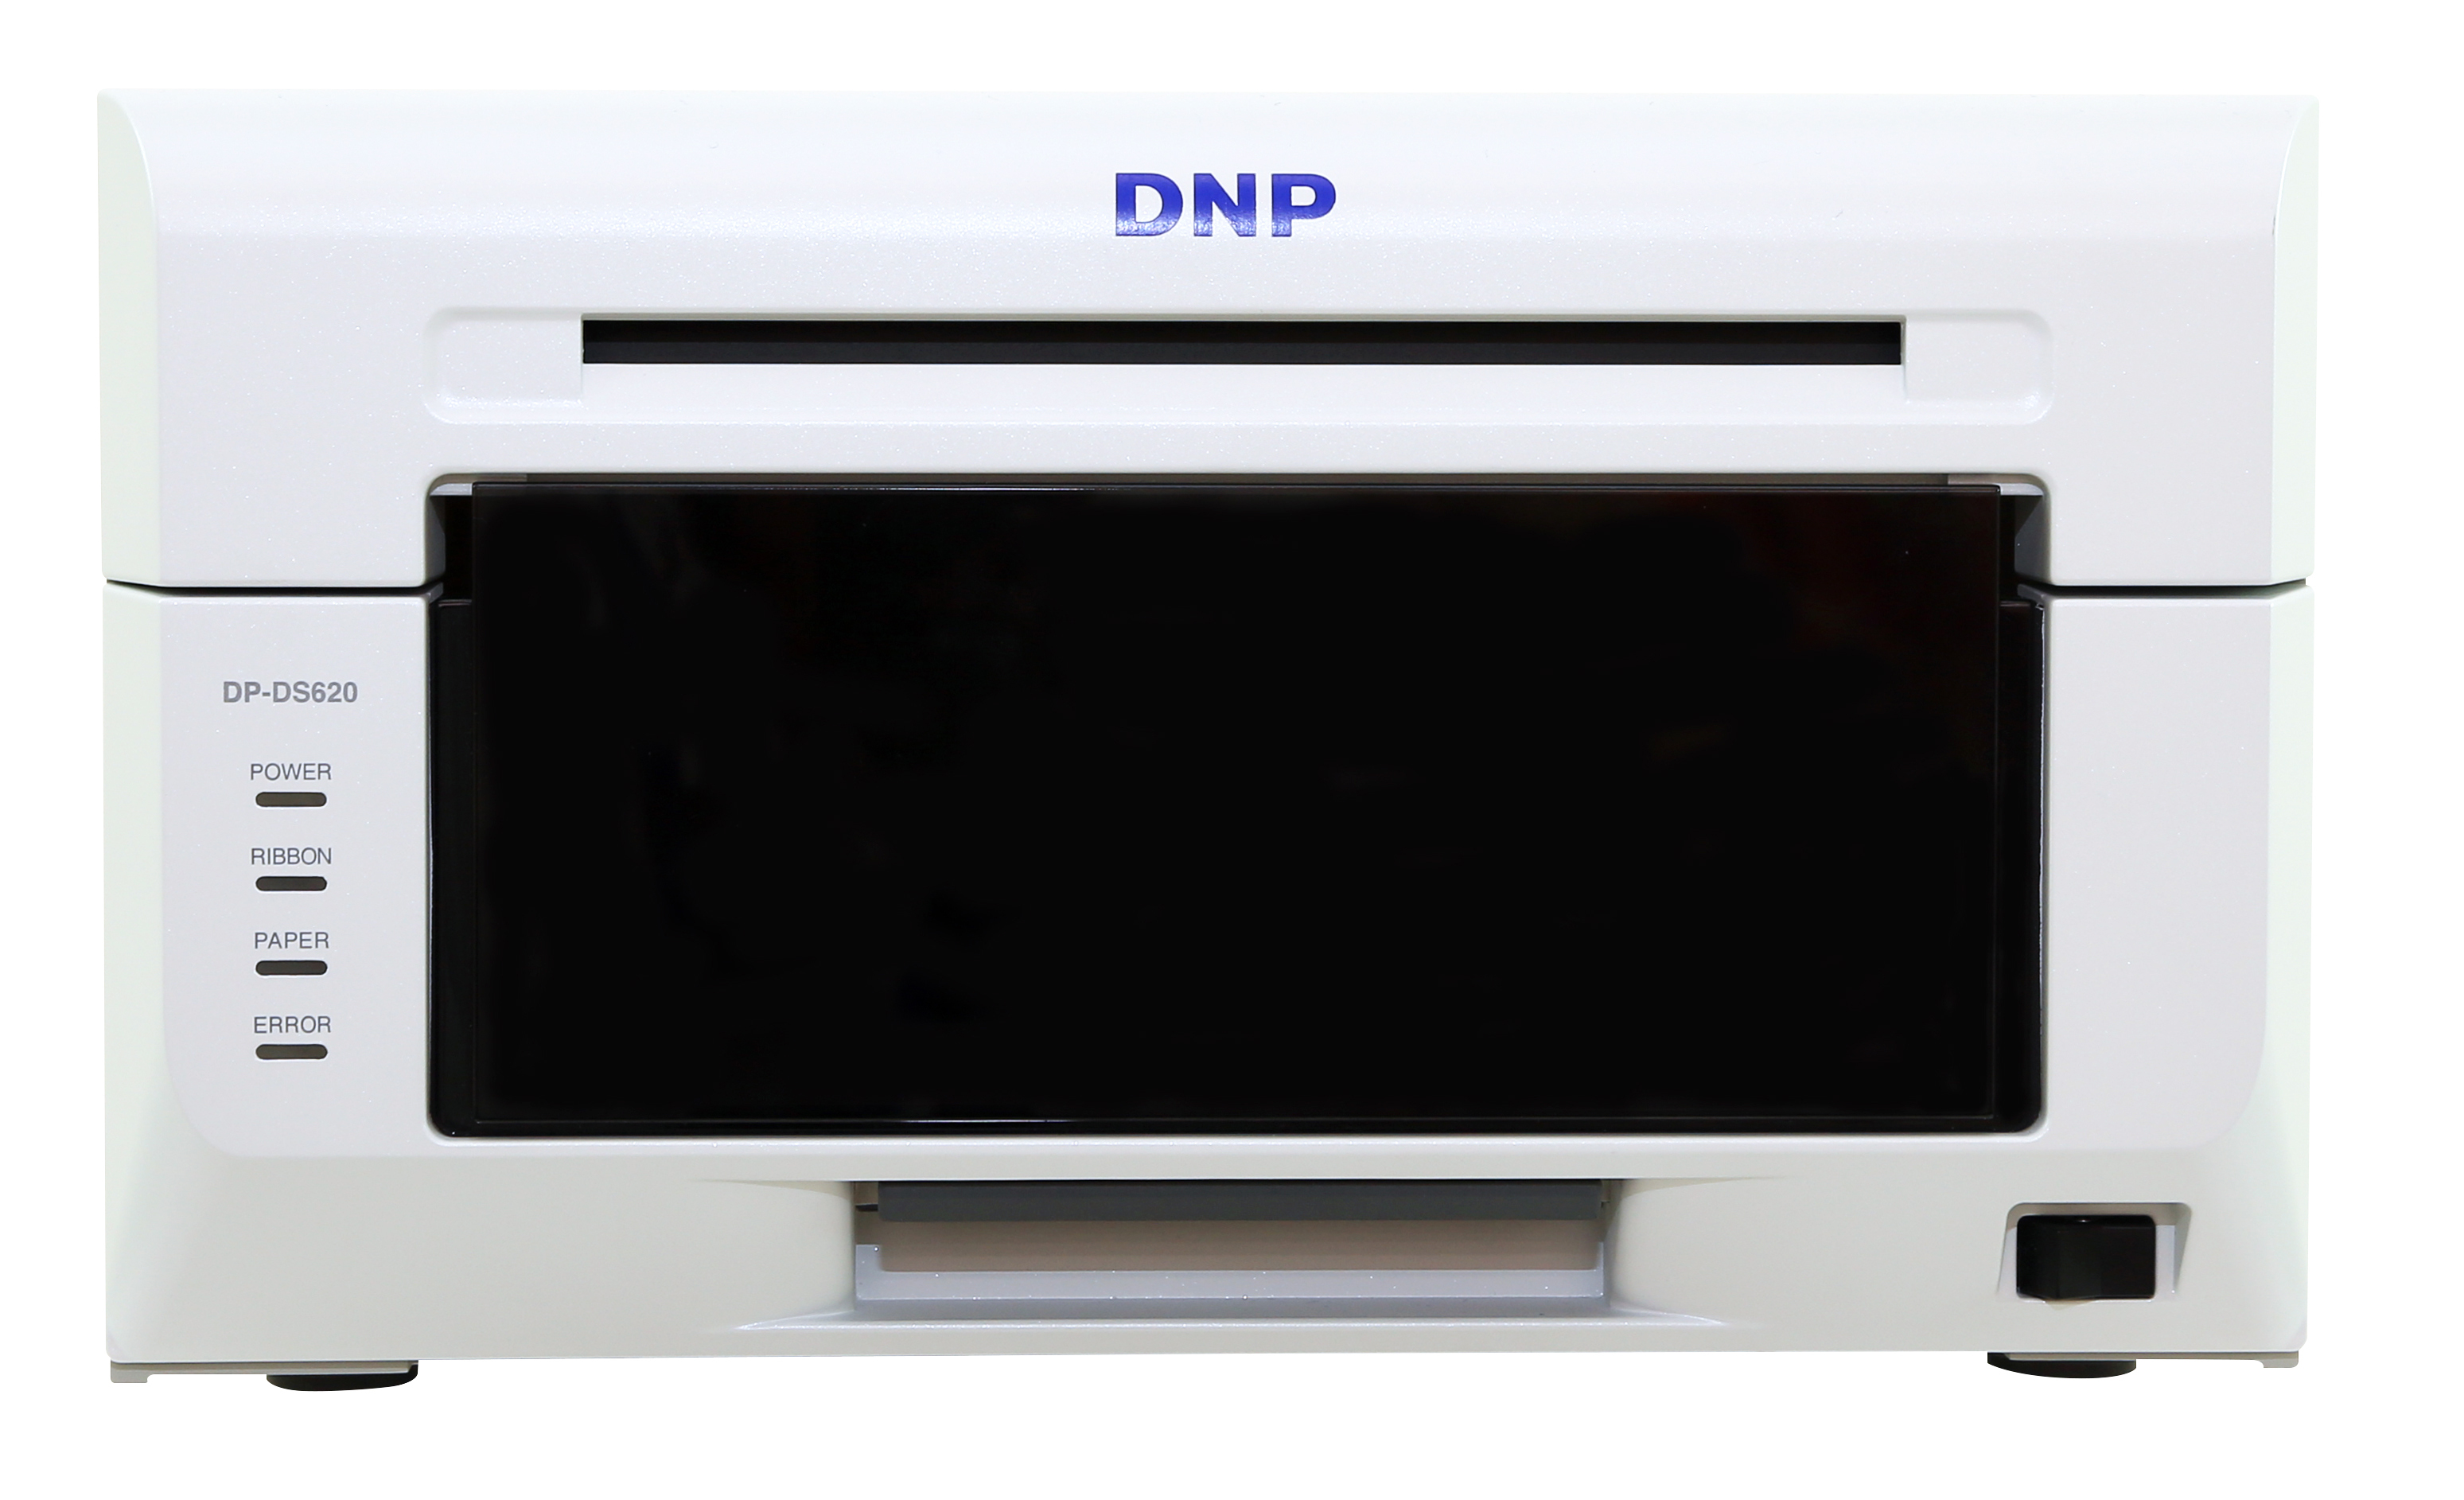 DNP DP-DS620